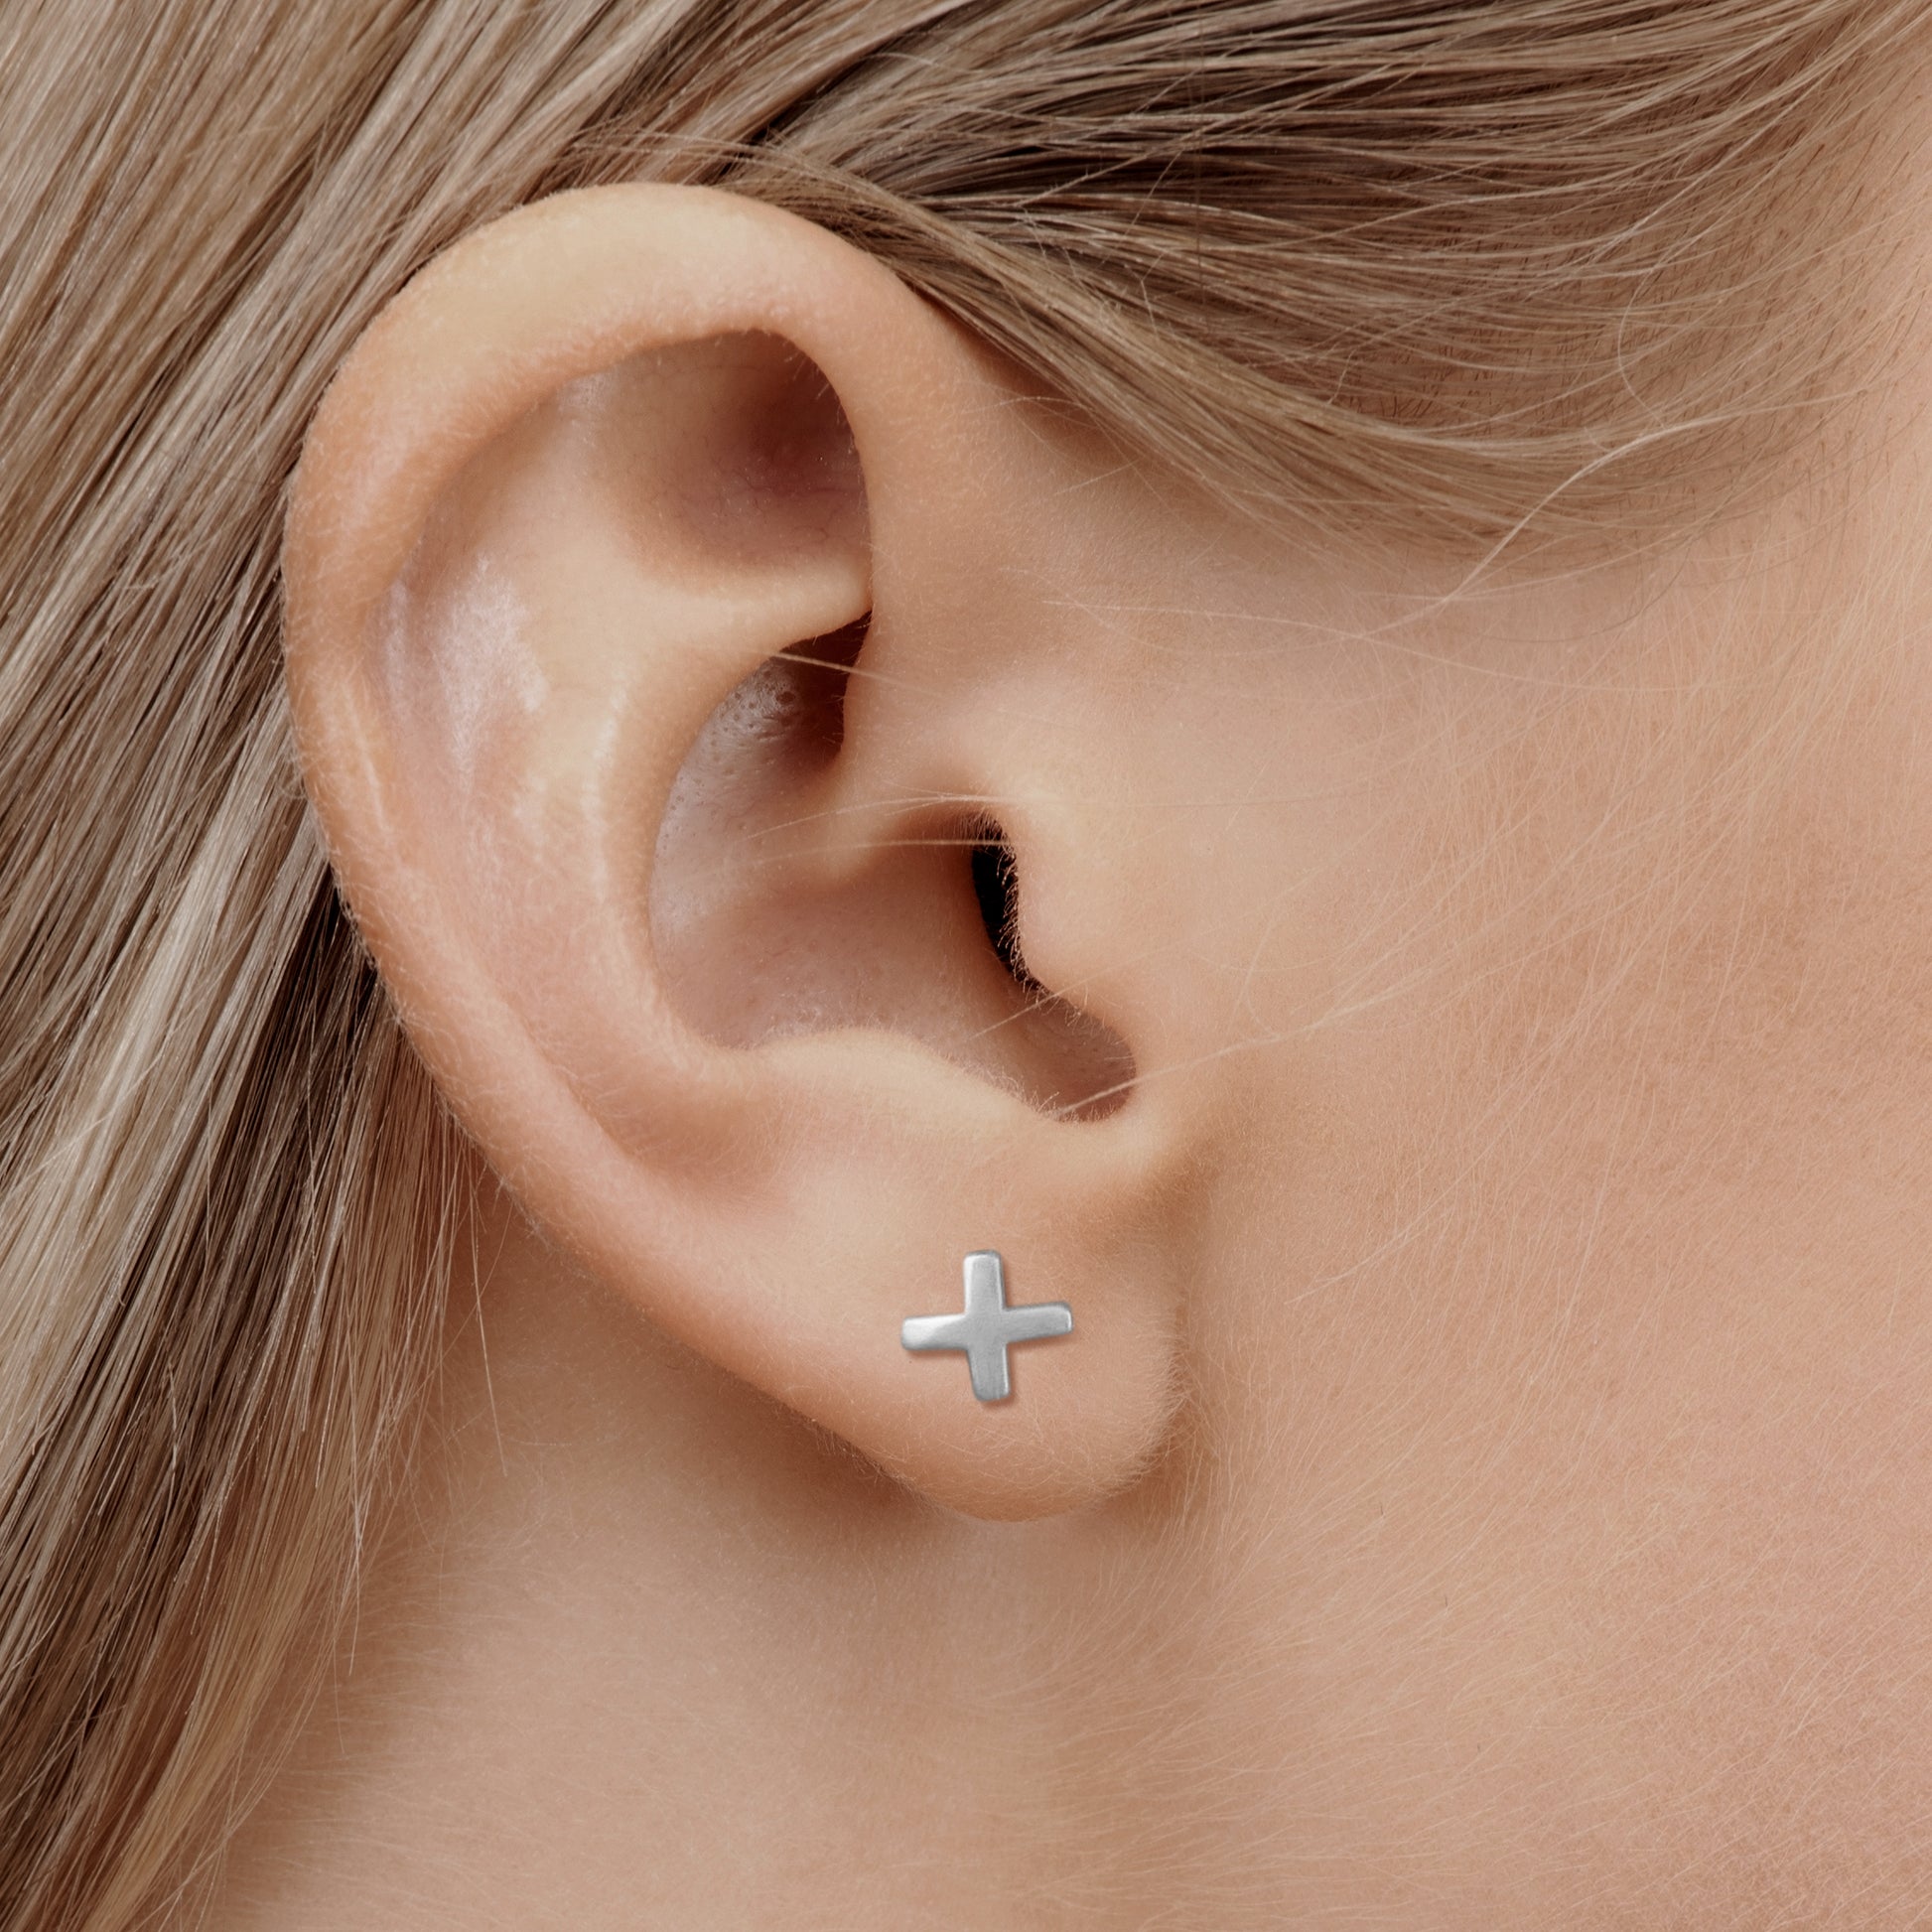 Cross earring in silver in nurse model